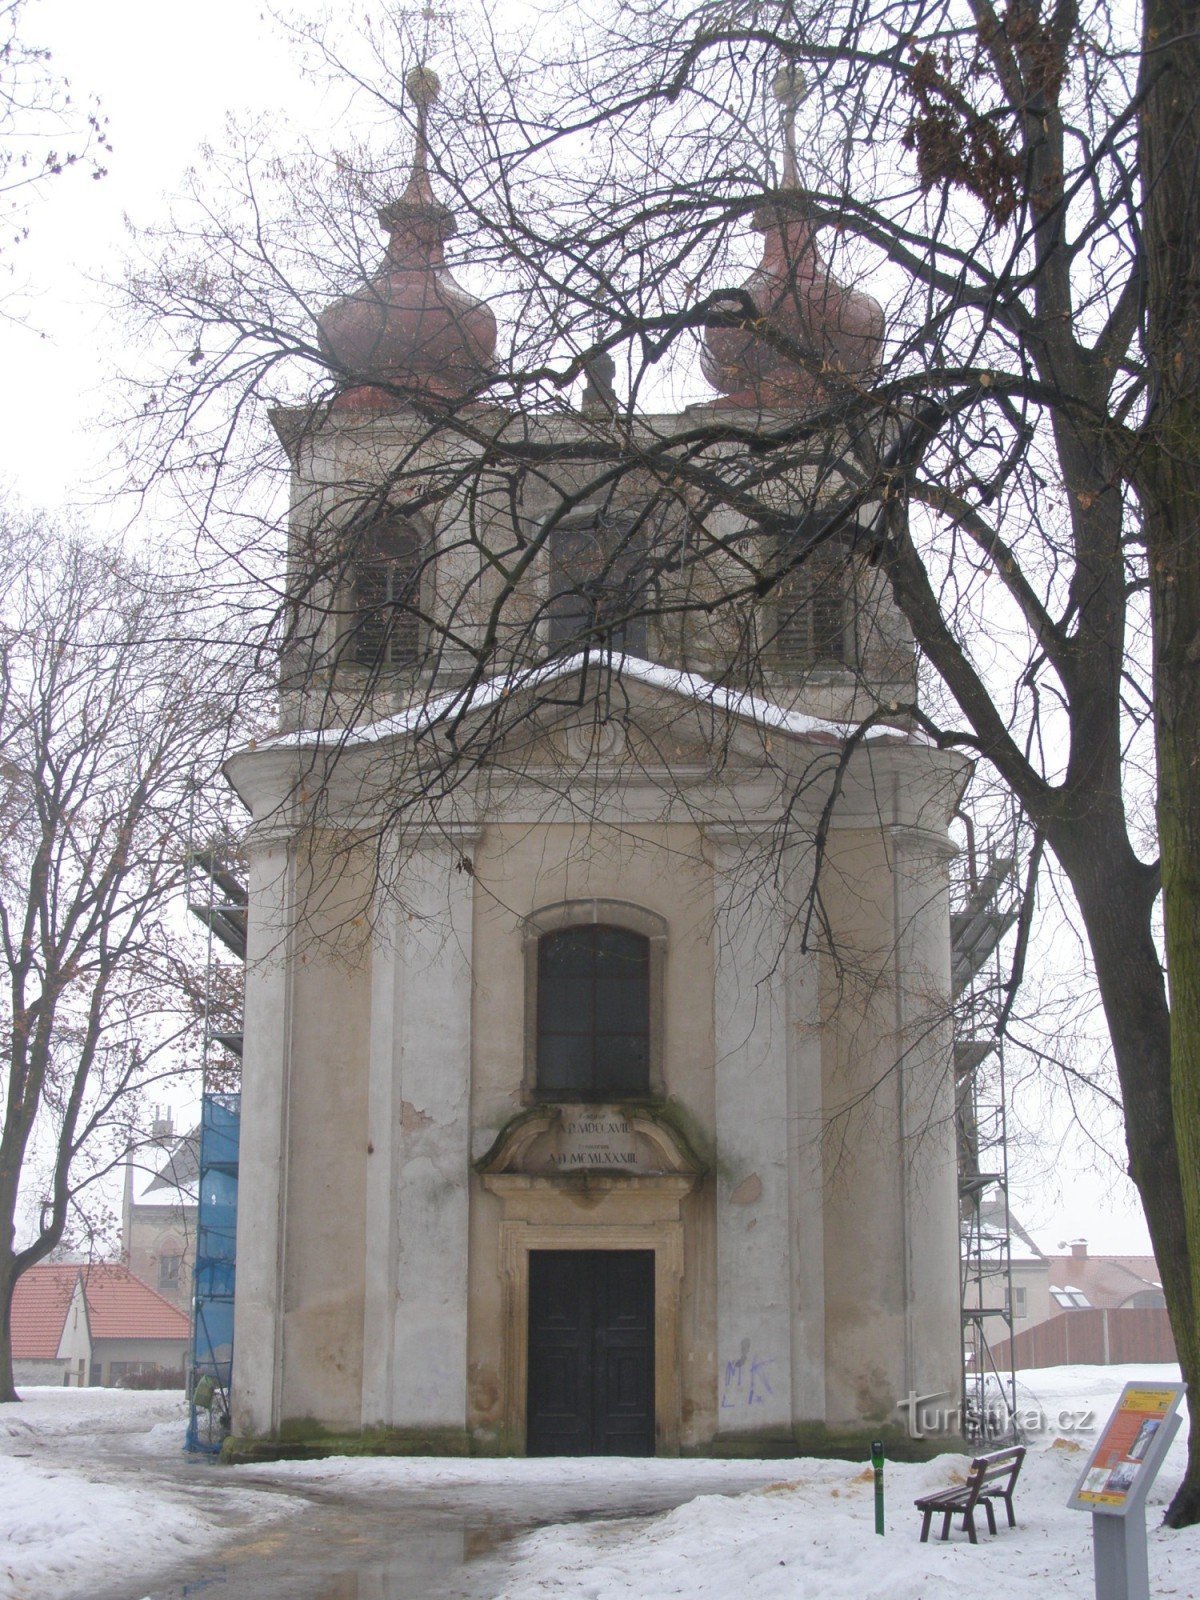 Nový Bydžov - Igreja da Santíssima Trindade